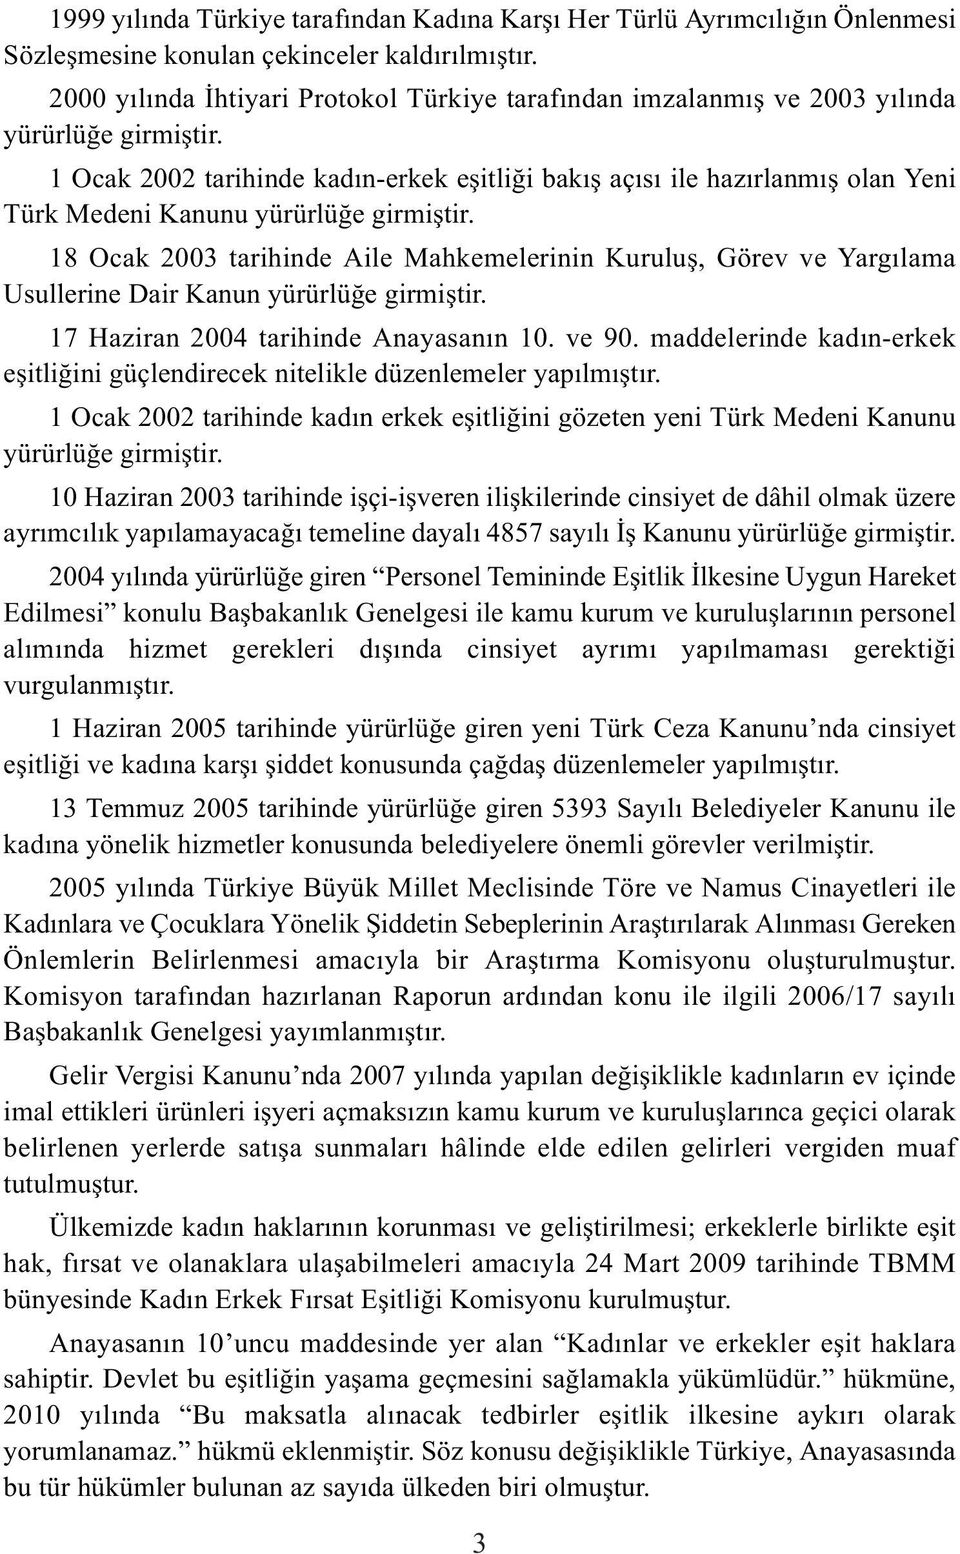 1 Ocak 2002 tarihinde kadın-erkek eşitliği bakış açısı ile hazırlanmış olan Yeni Türk Medeni Kanunu yürürlüğe girmiştir.